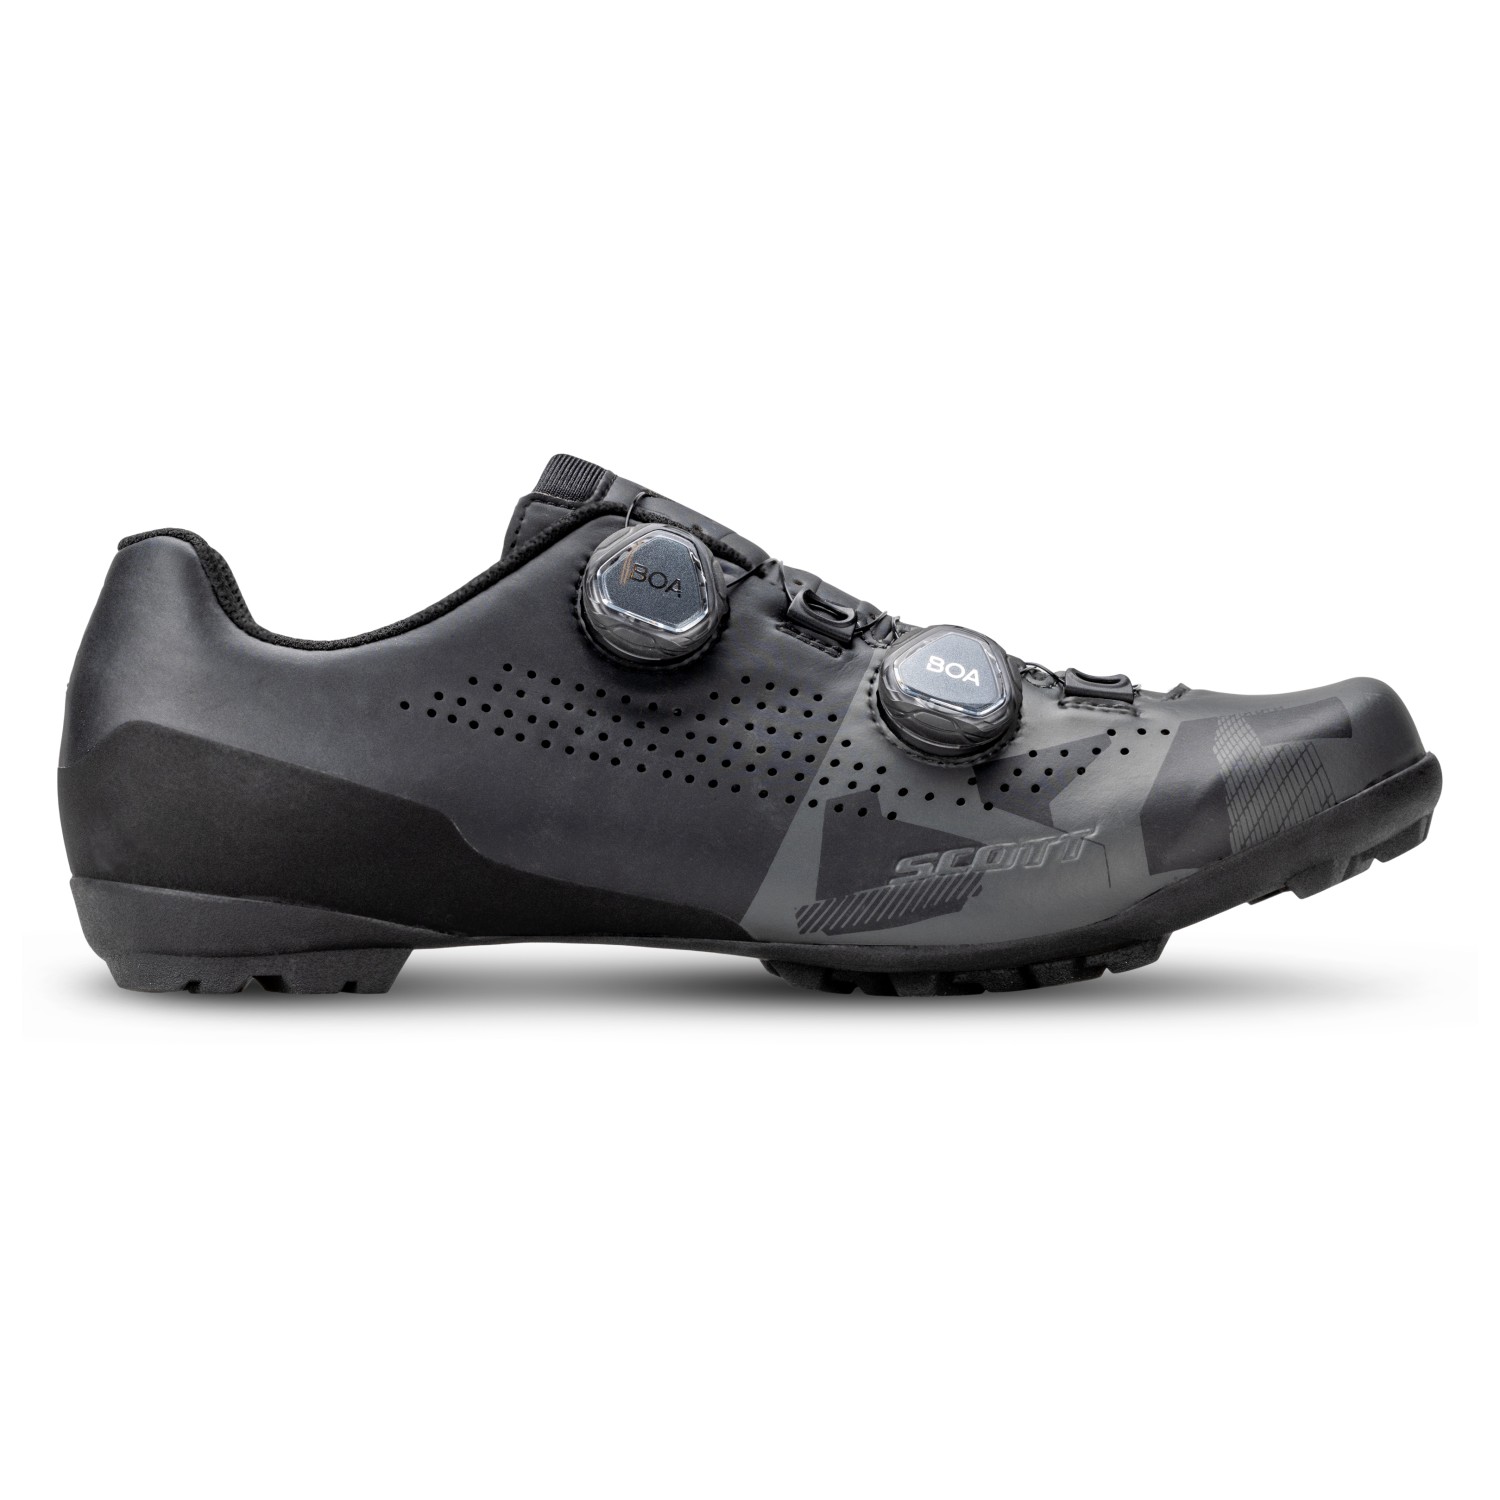 Велосипедная обувь Scott Gravel RC, цвет Matt Black/Anthracite Grey